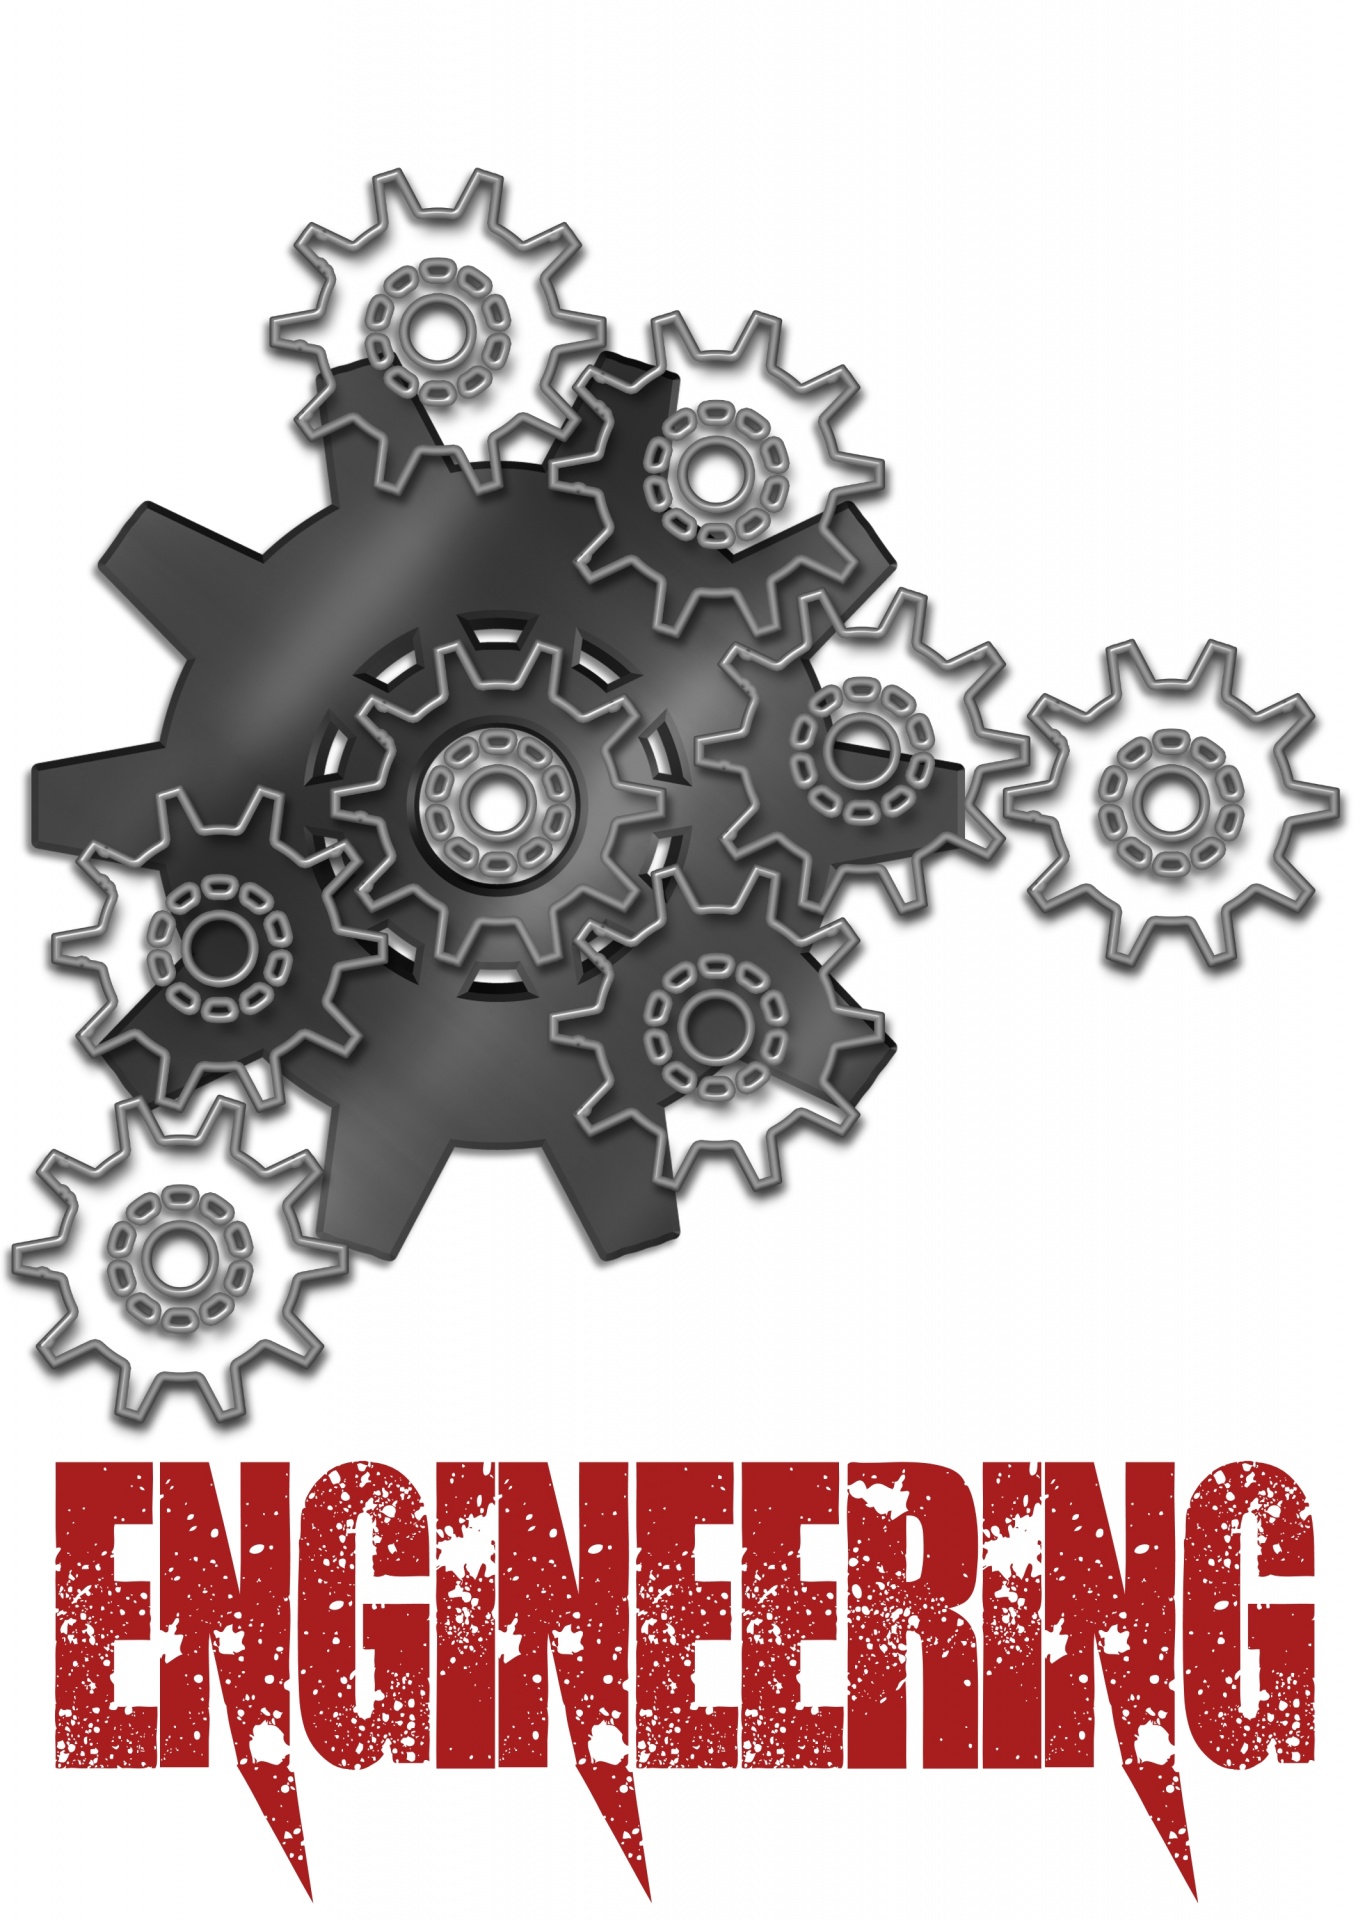 Engineering Recruiting Growing | More Engineers Needed